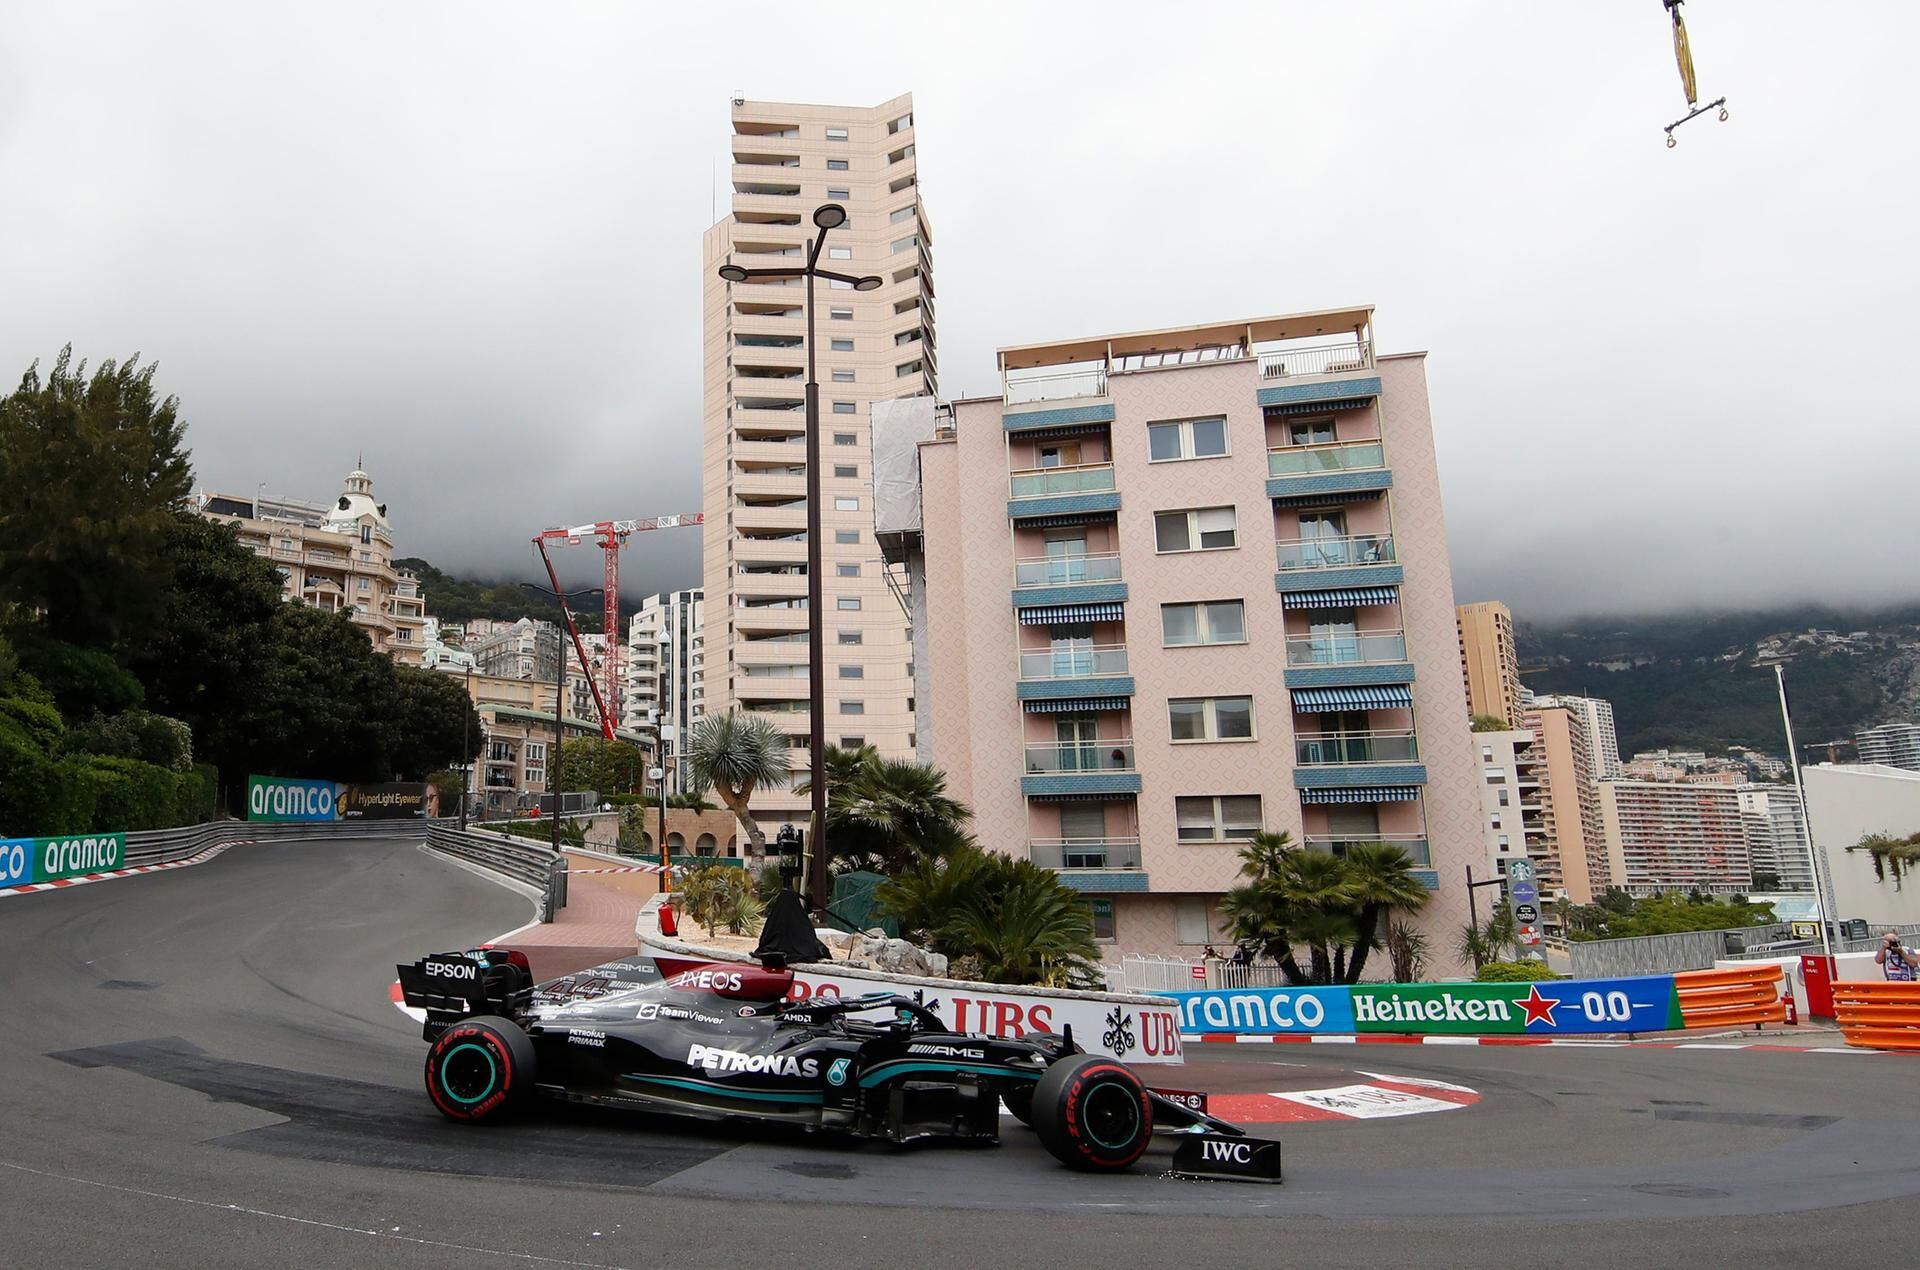 Monaco F1 circuit - Monaco Addict